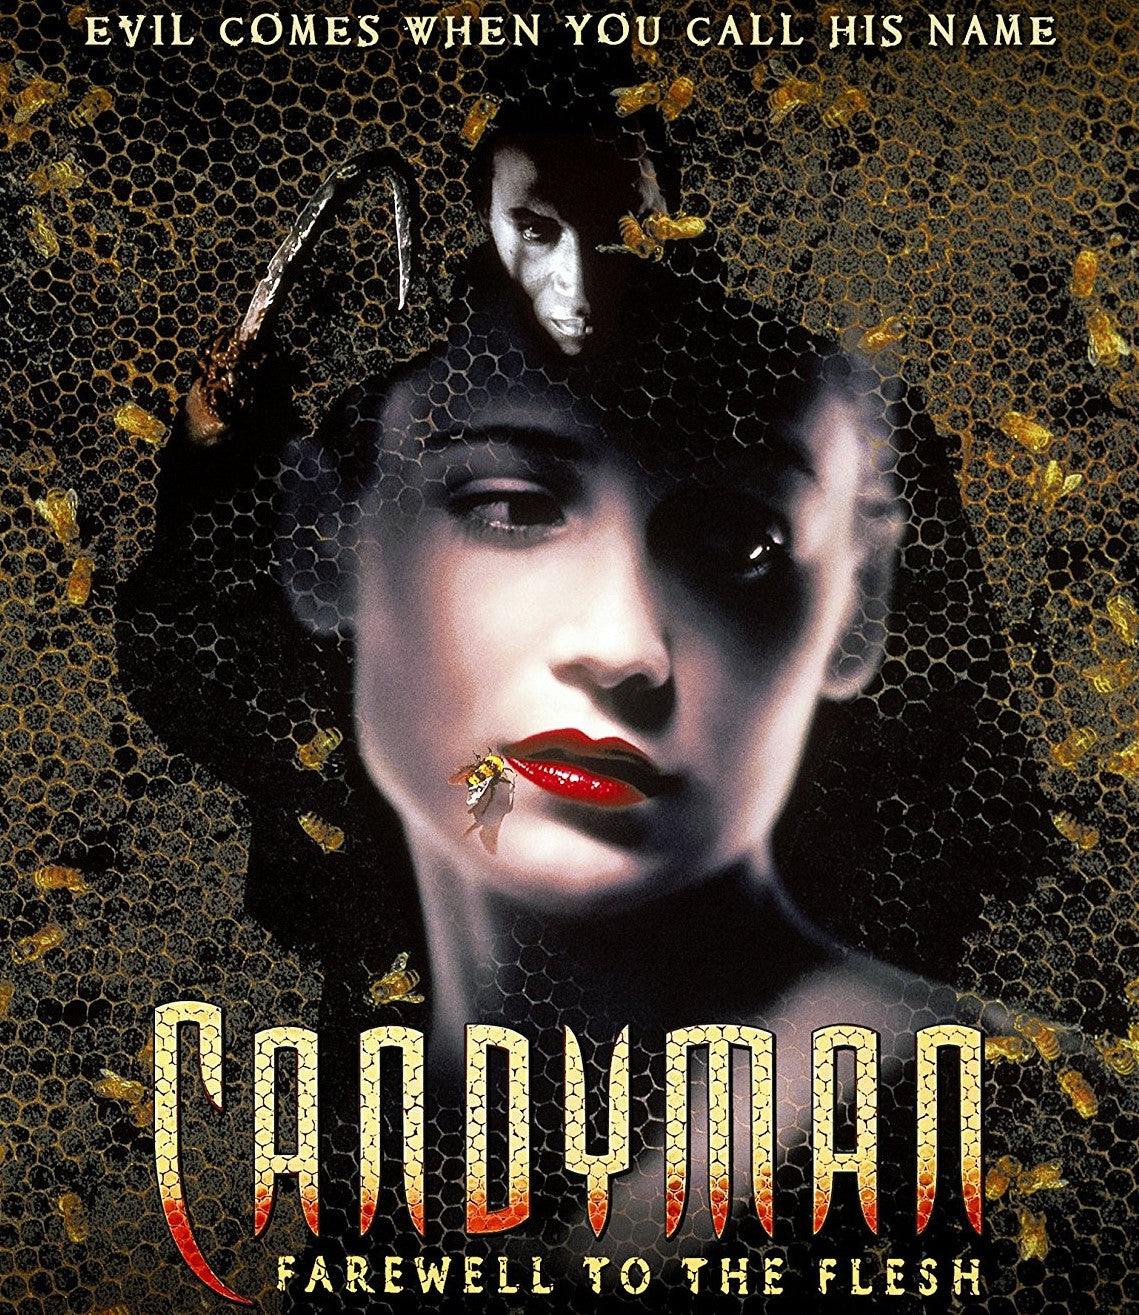 Pin on Tony Todd • Candyman